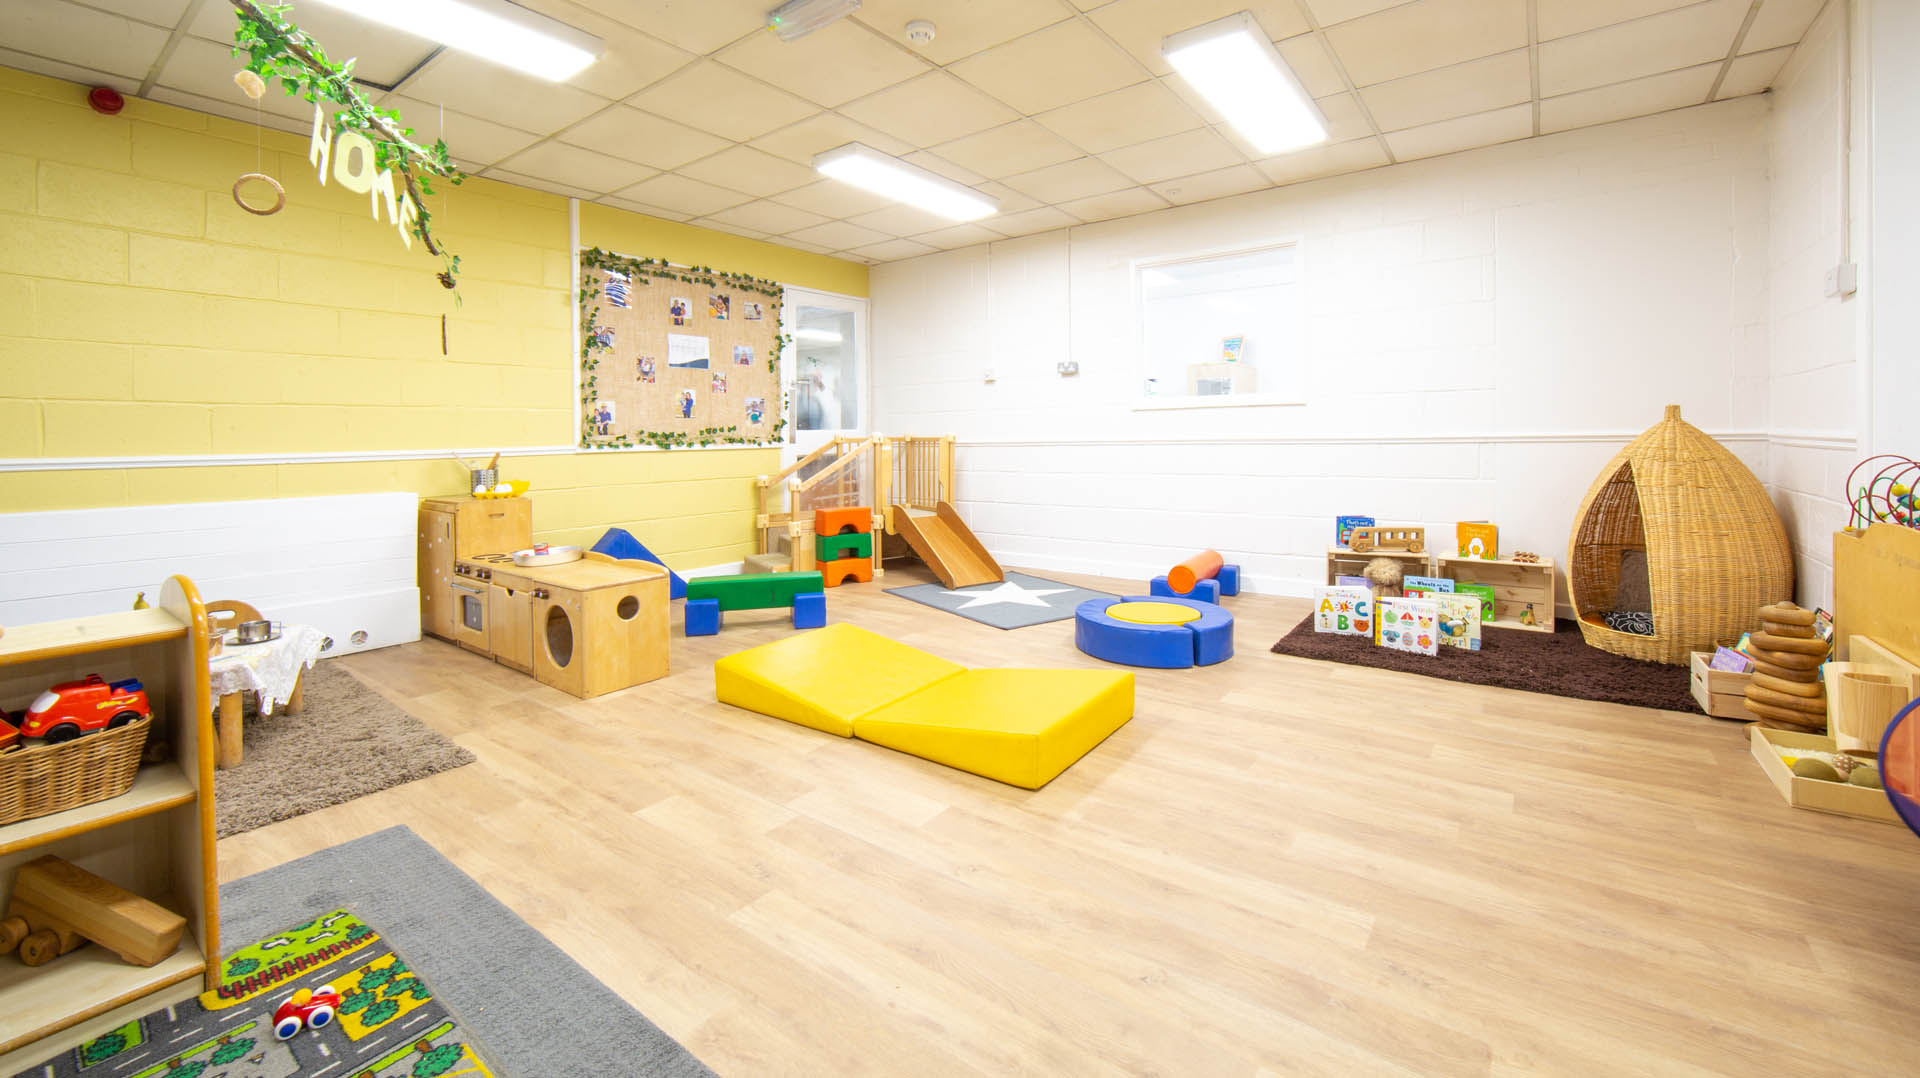 Hinckley Day Nursery and Preschool Nursery Room